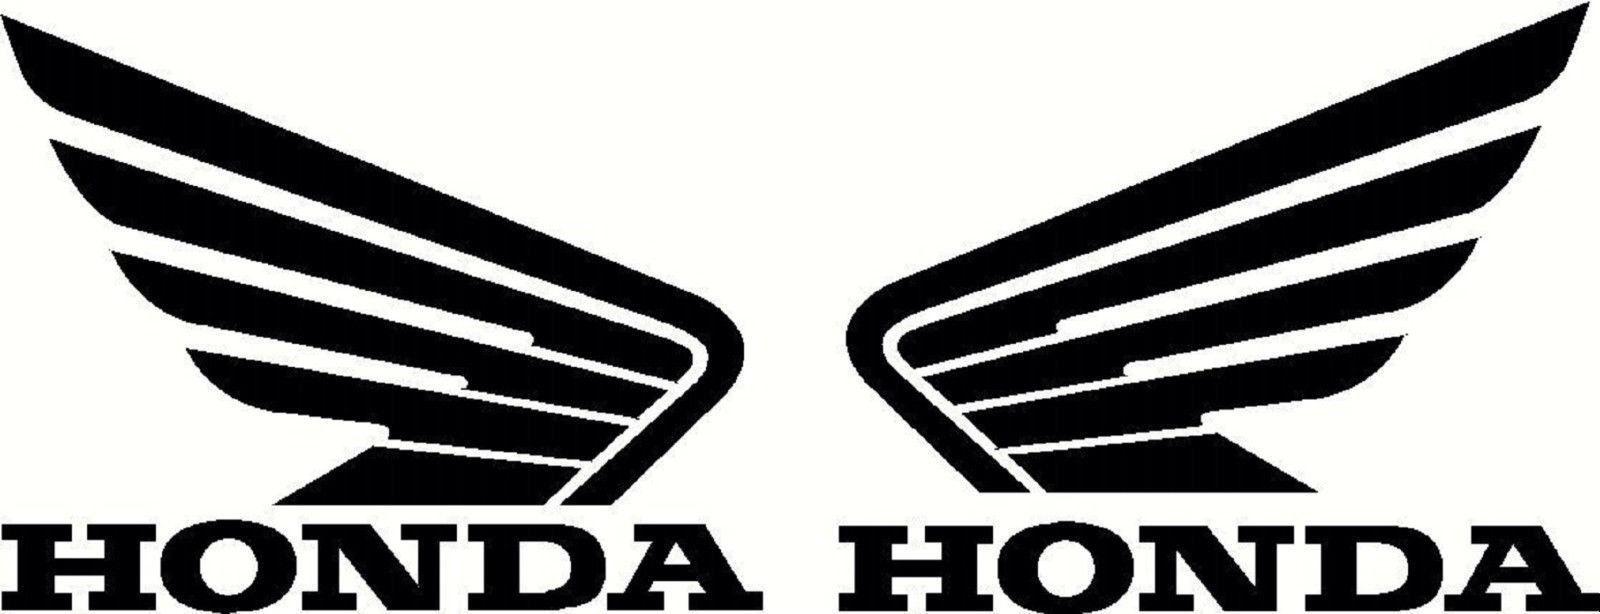 Honda ATV and Motorcycle Logo - Honda wing Logos